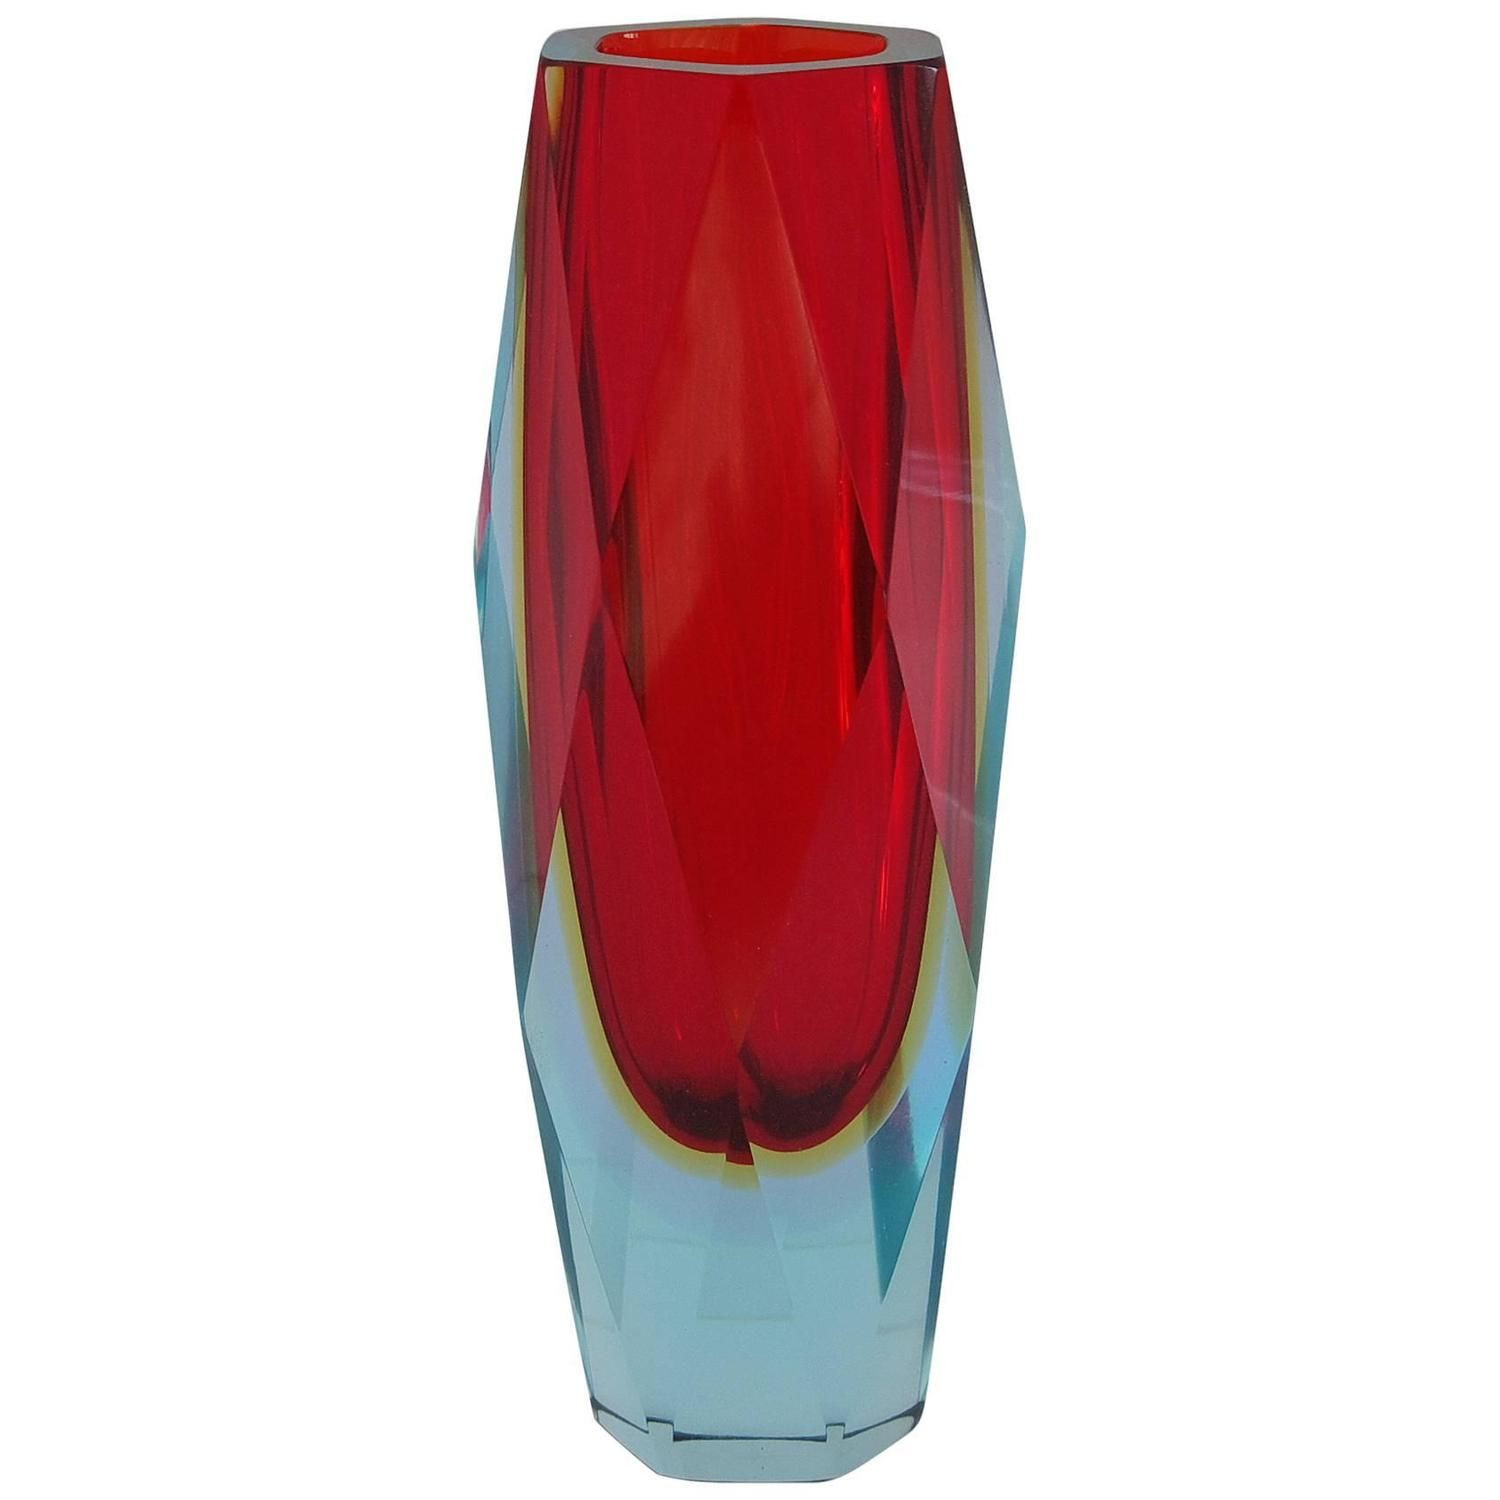 Red Murano Glass Vase Of Italian Murano Glass Red sommerso Faceted Vase by Mandruzzato Inside Cbf7eb5c1906fd14ce2e94a9bb788f26